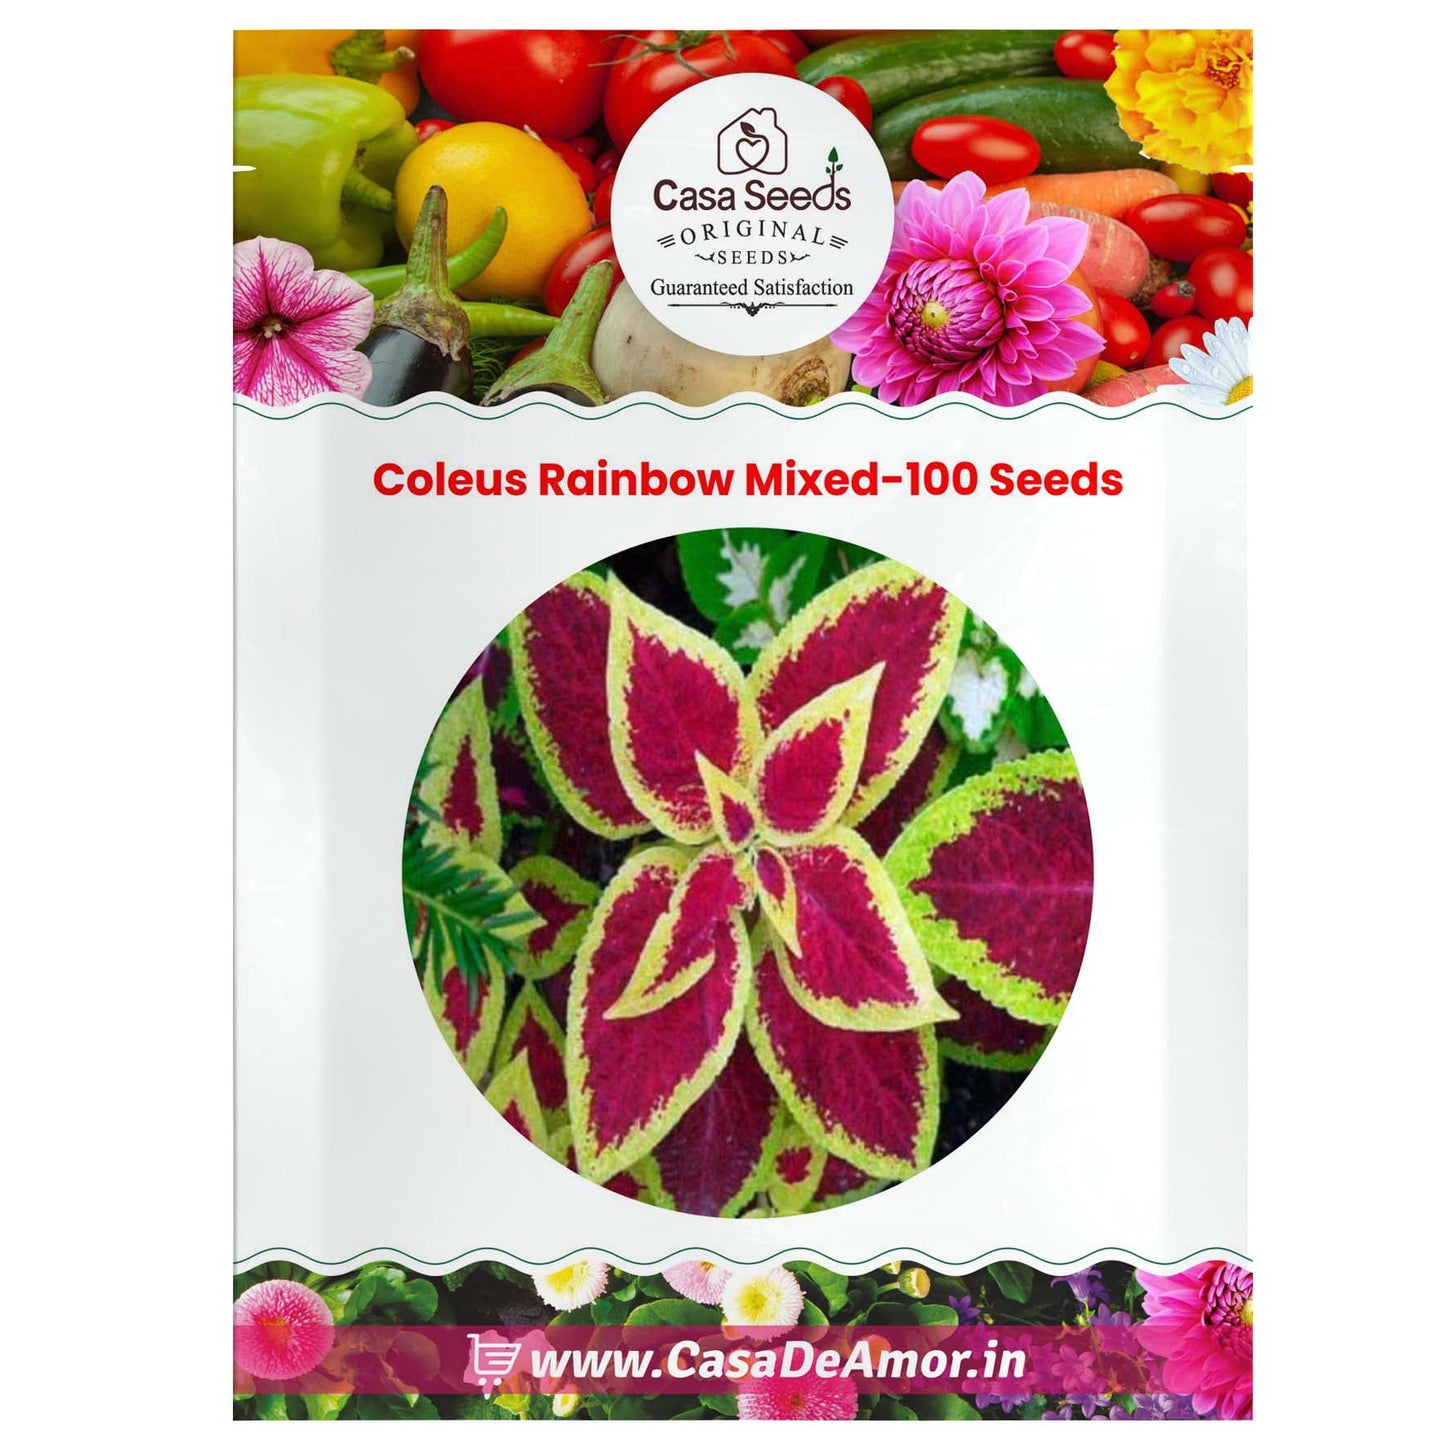 Coleus Rainbow Mixed-100 Seeds